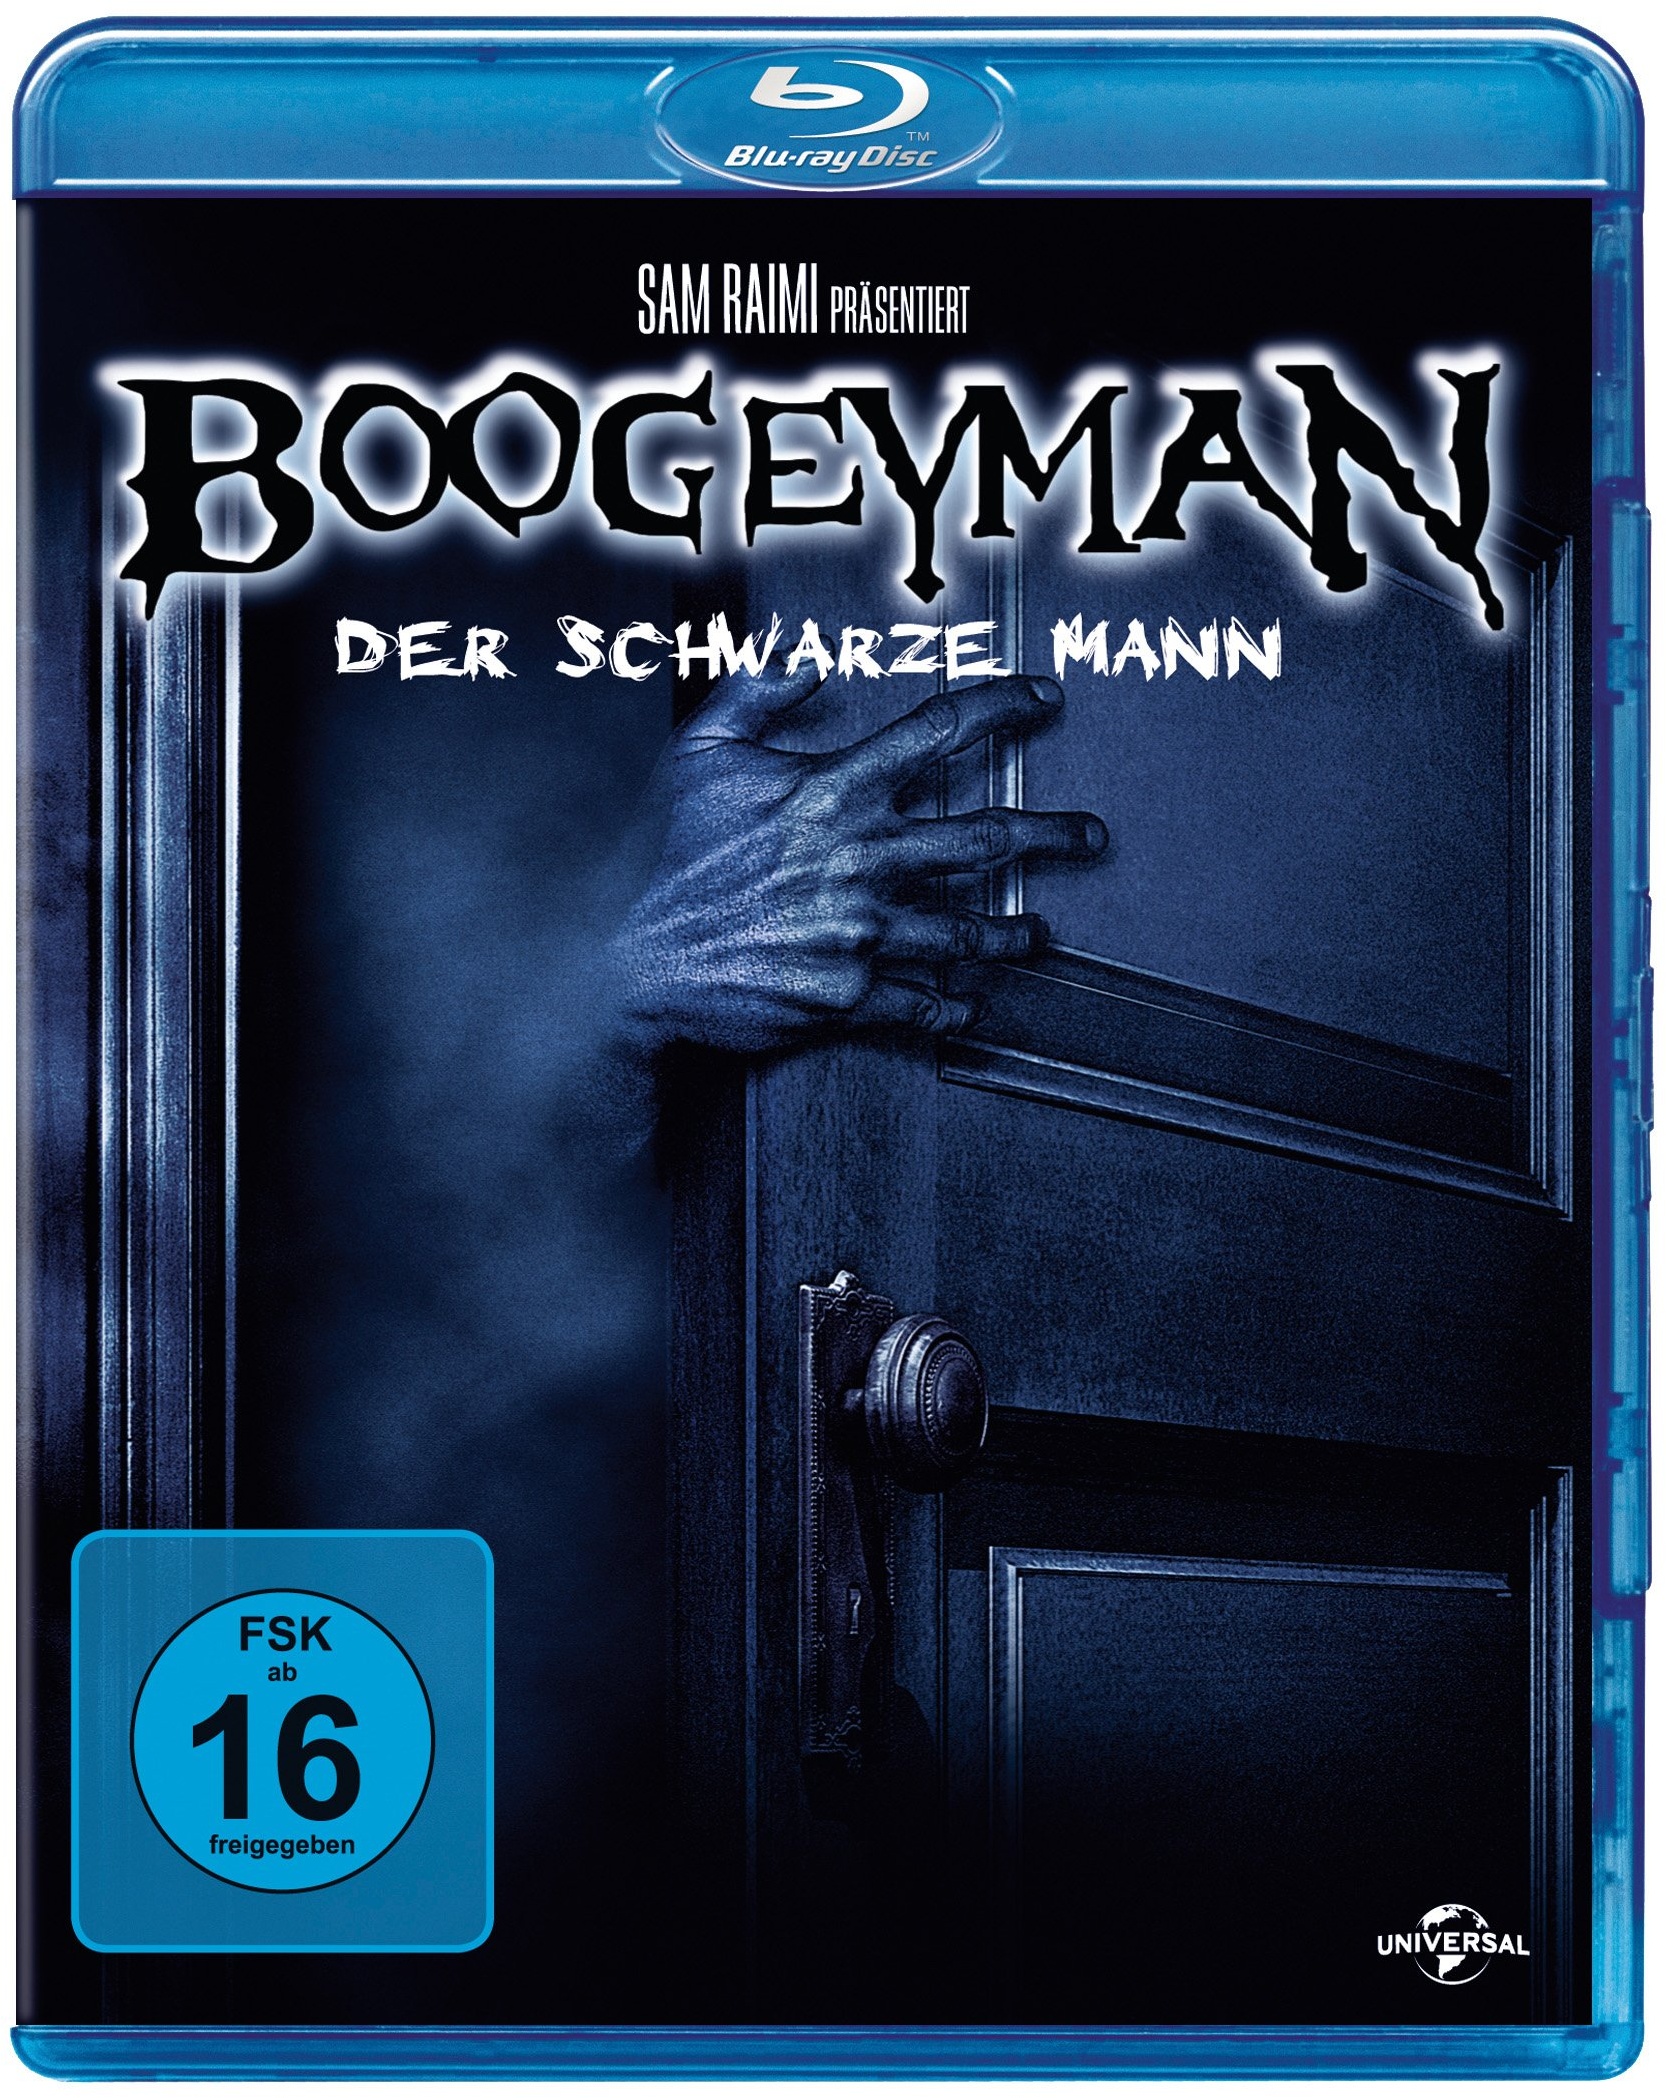 Boogeyman - Der schwarze Mann [Blu-ray] (Neu differenzbesteuert)